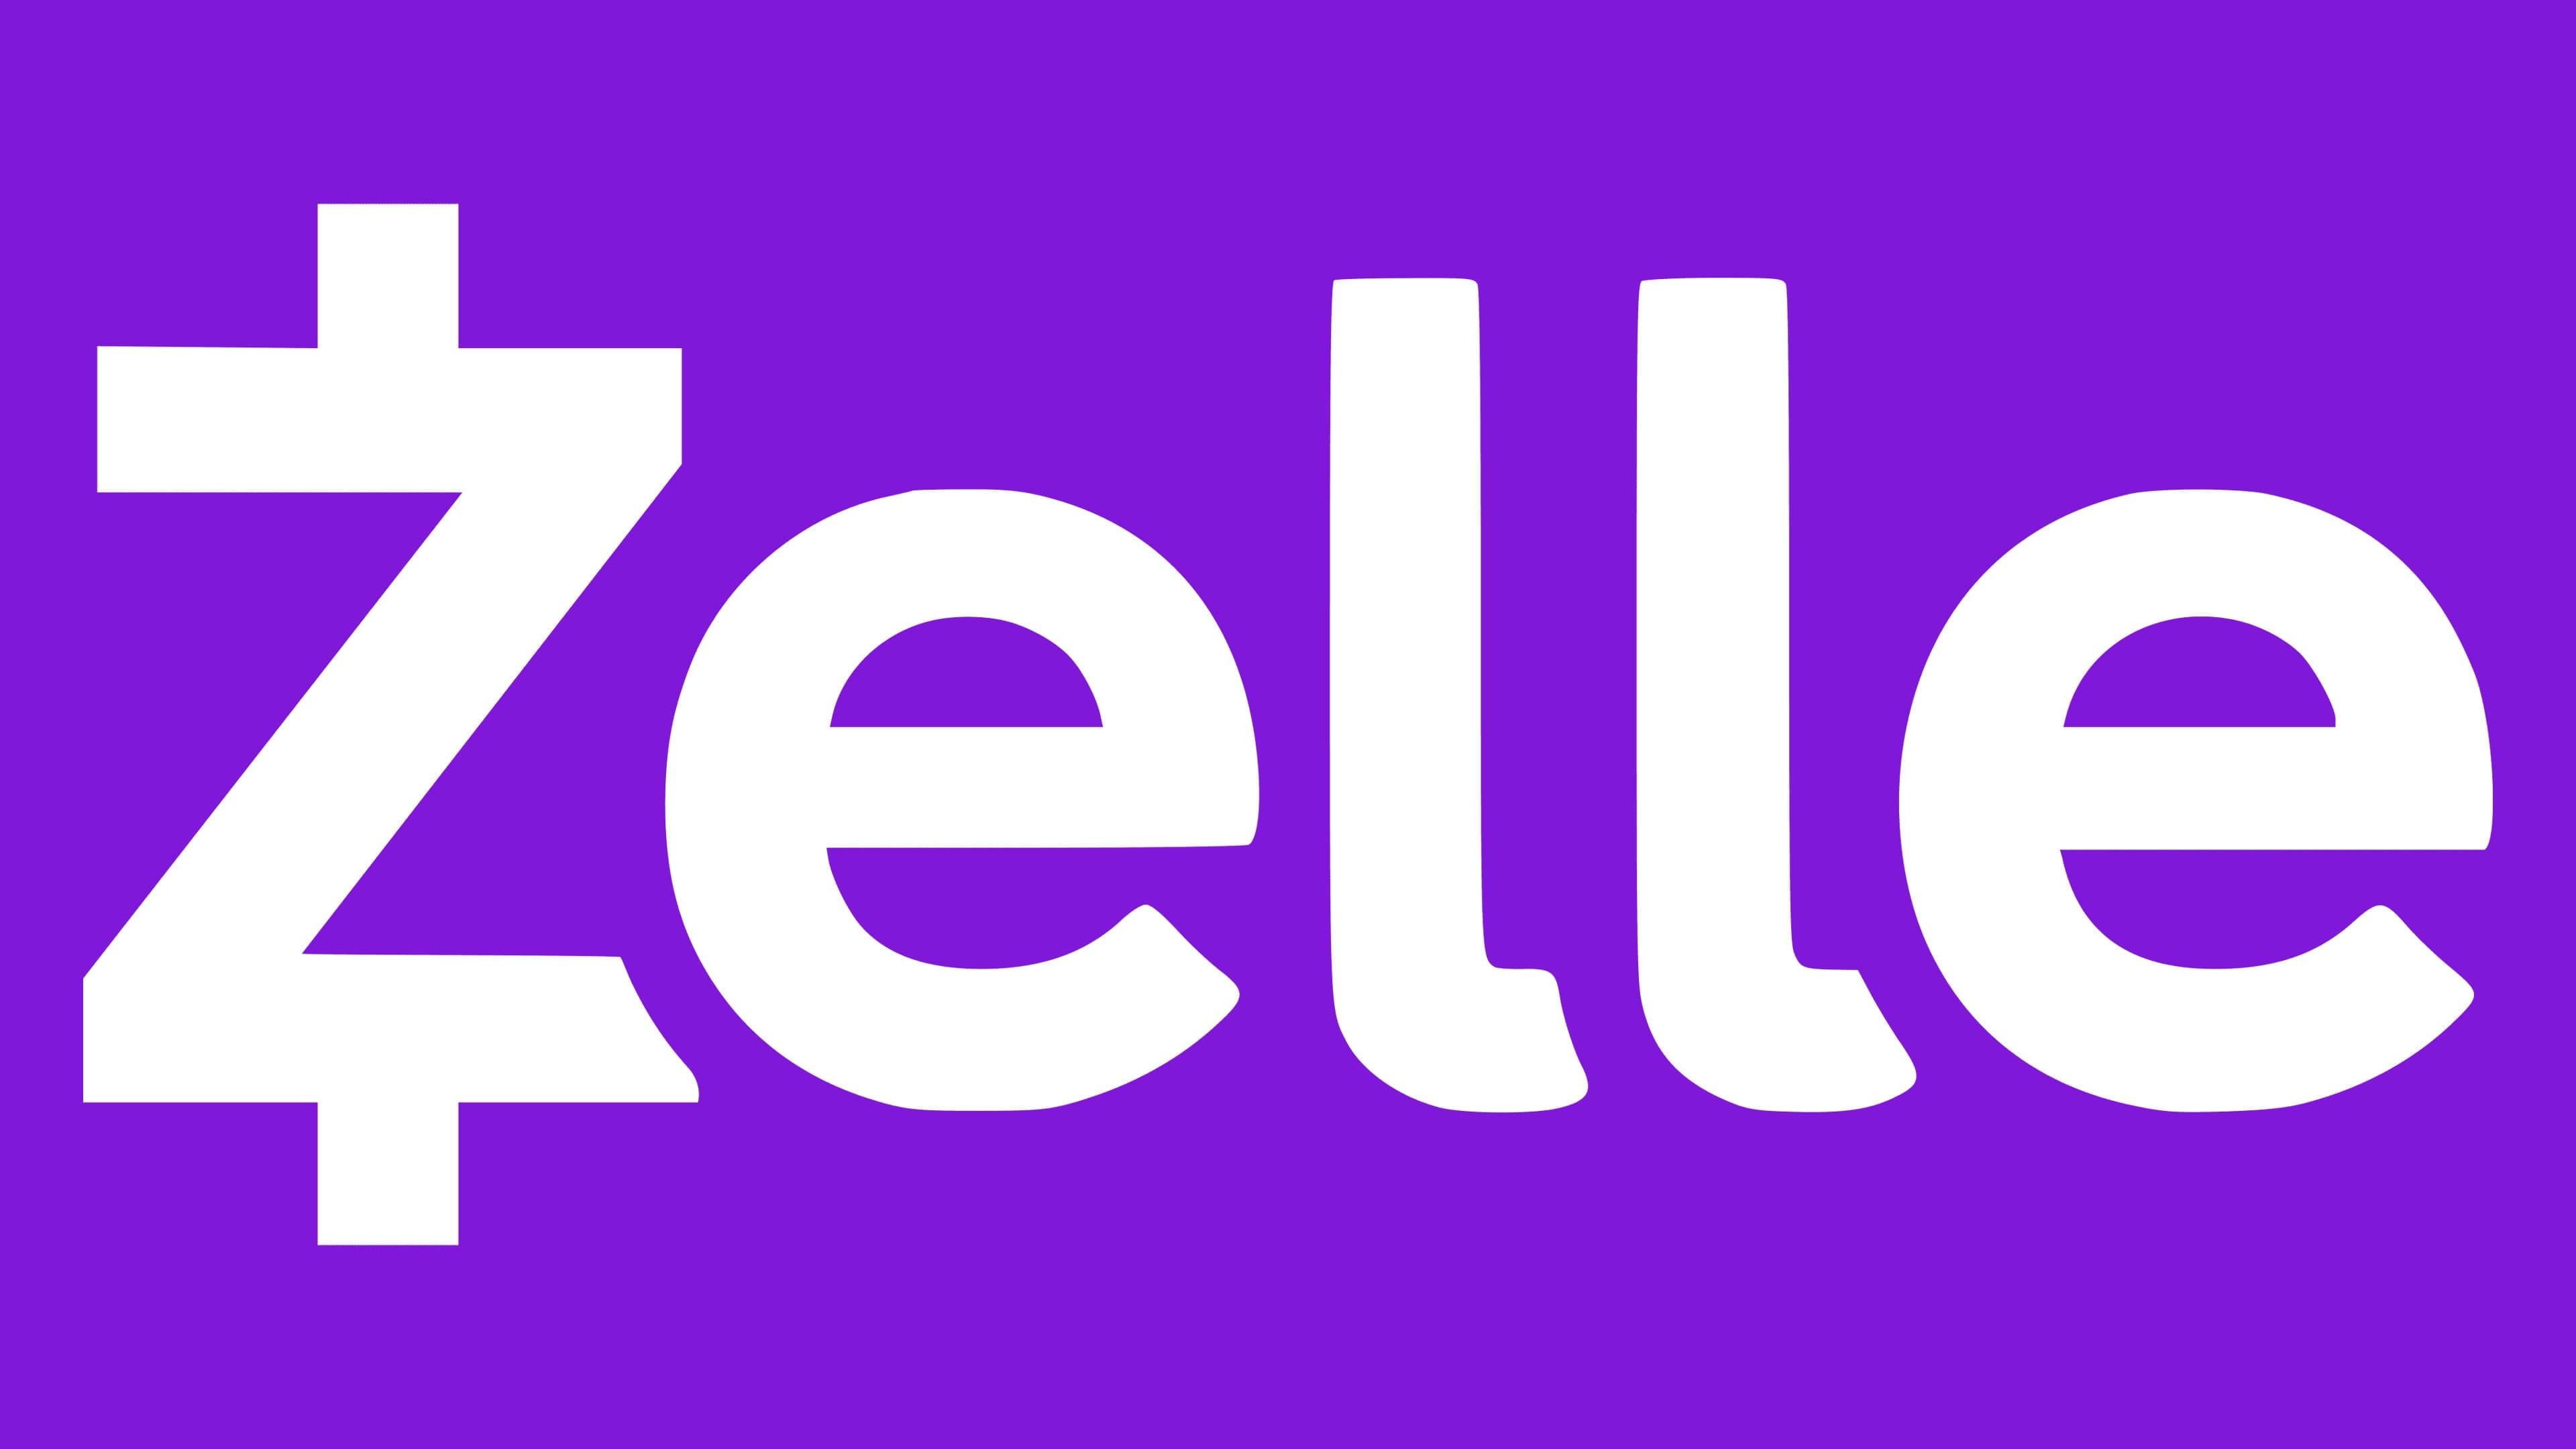 https://logos-world.net/wp-content/uploads/2021/02/Zelle-Emblem.jpg